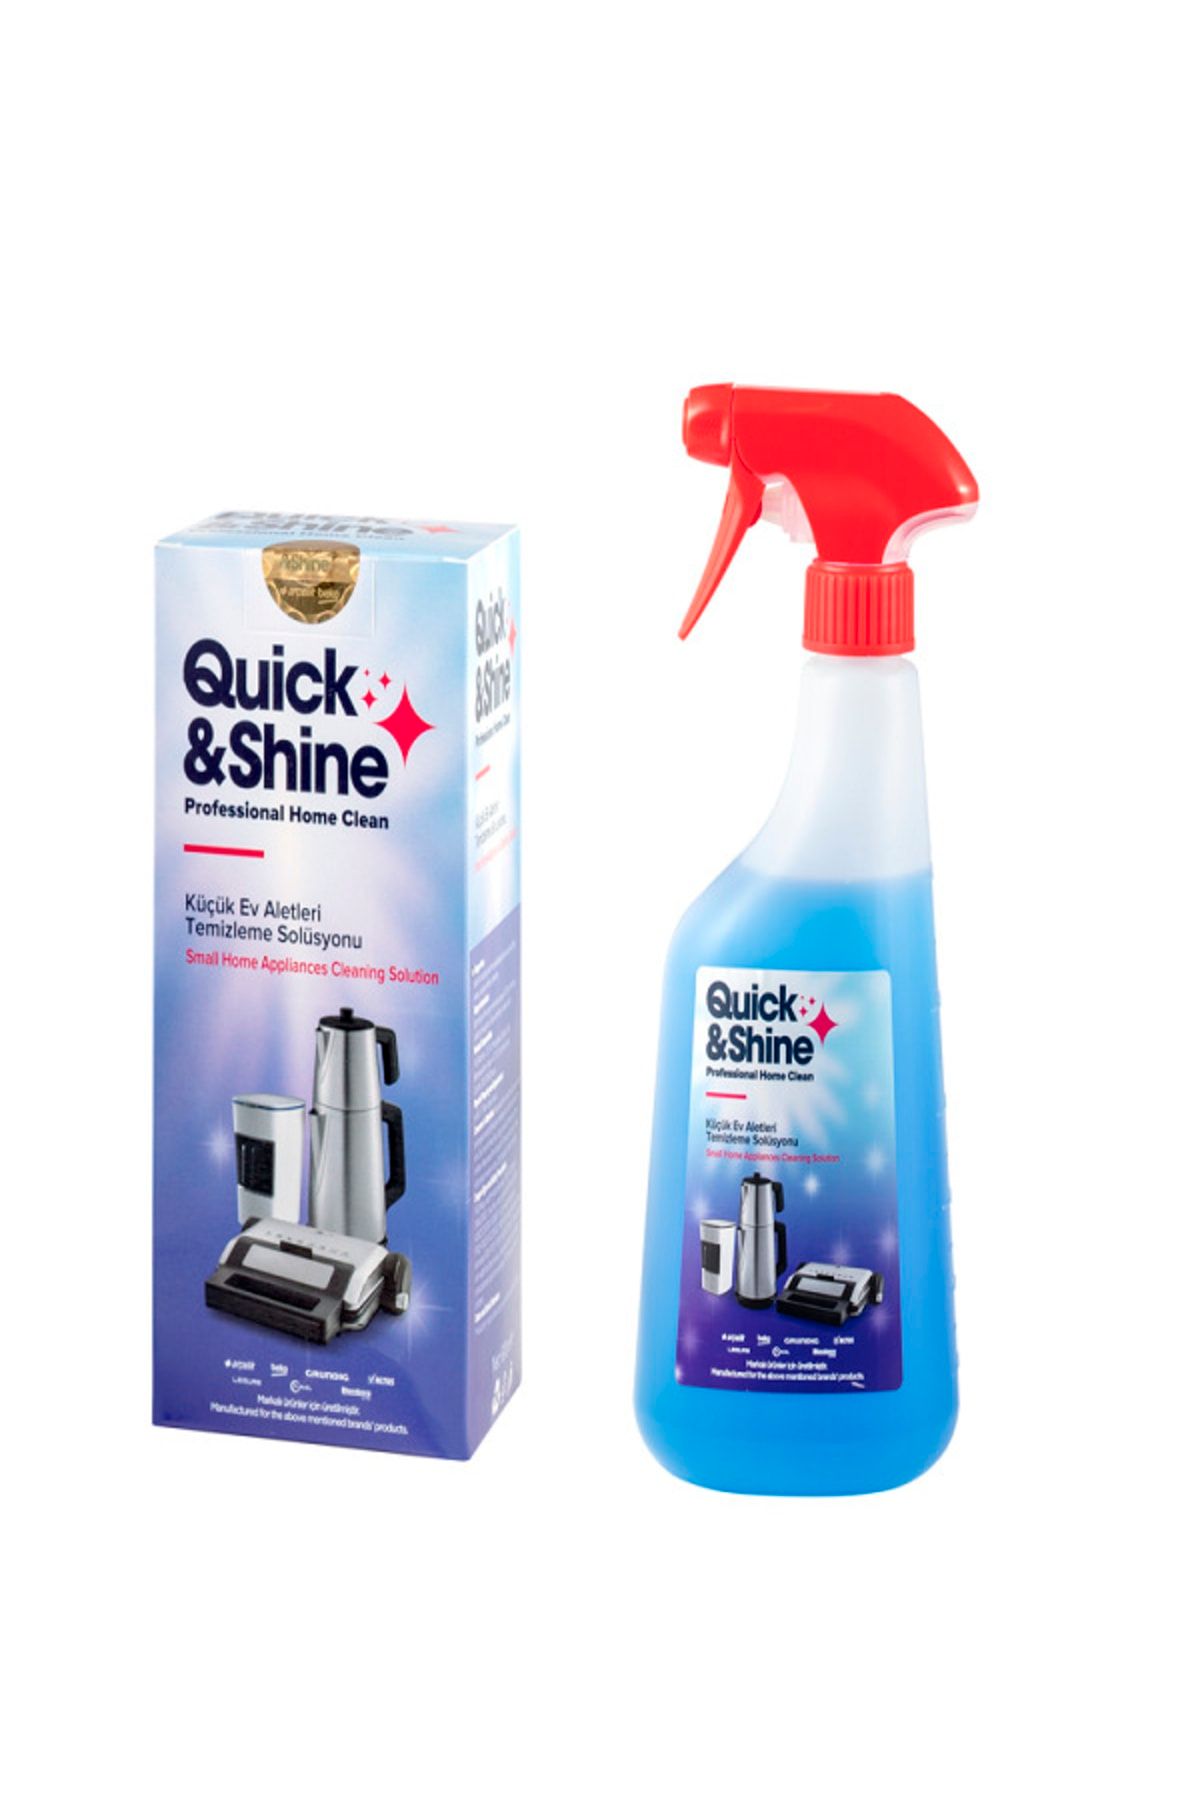 Quick&Shine Küçük Ev Aletleri Temizleme Solüsyonu Temizlik Ve Bakım Ürünleri